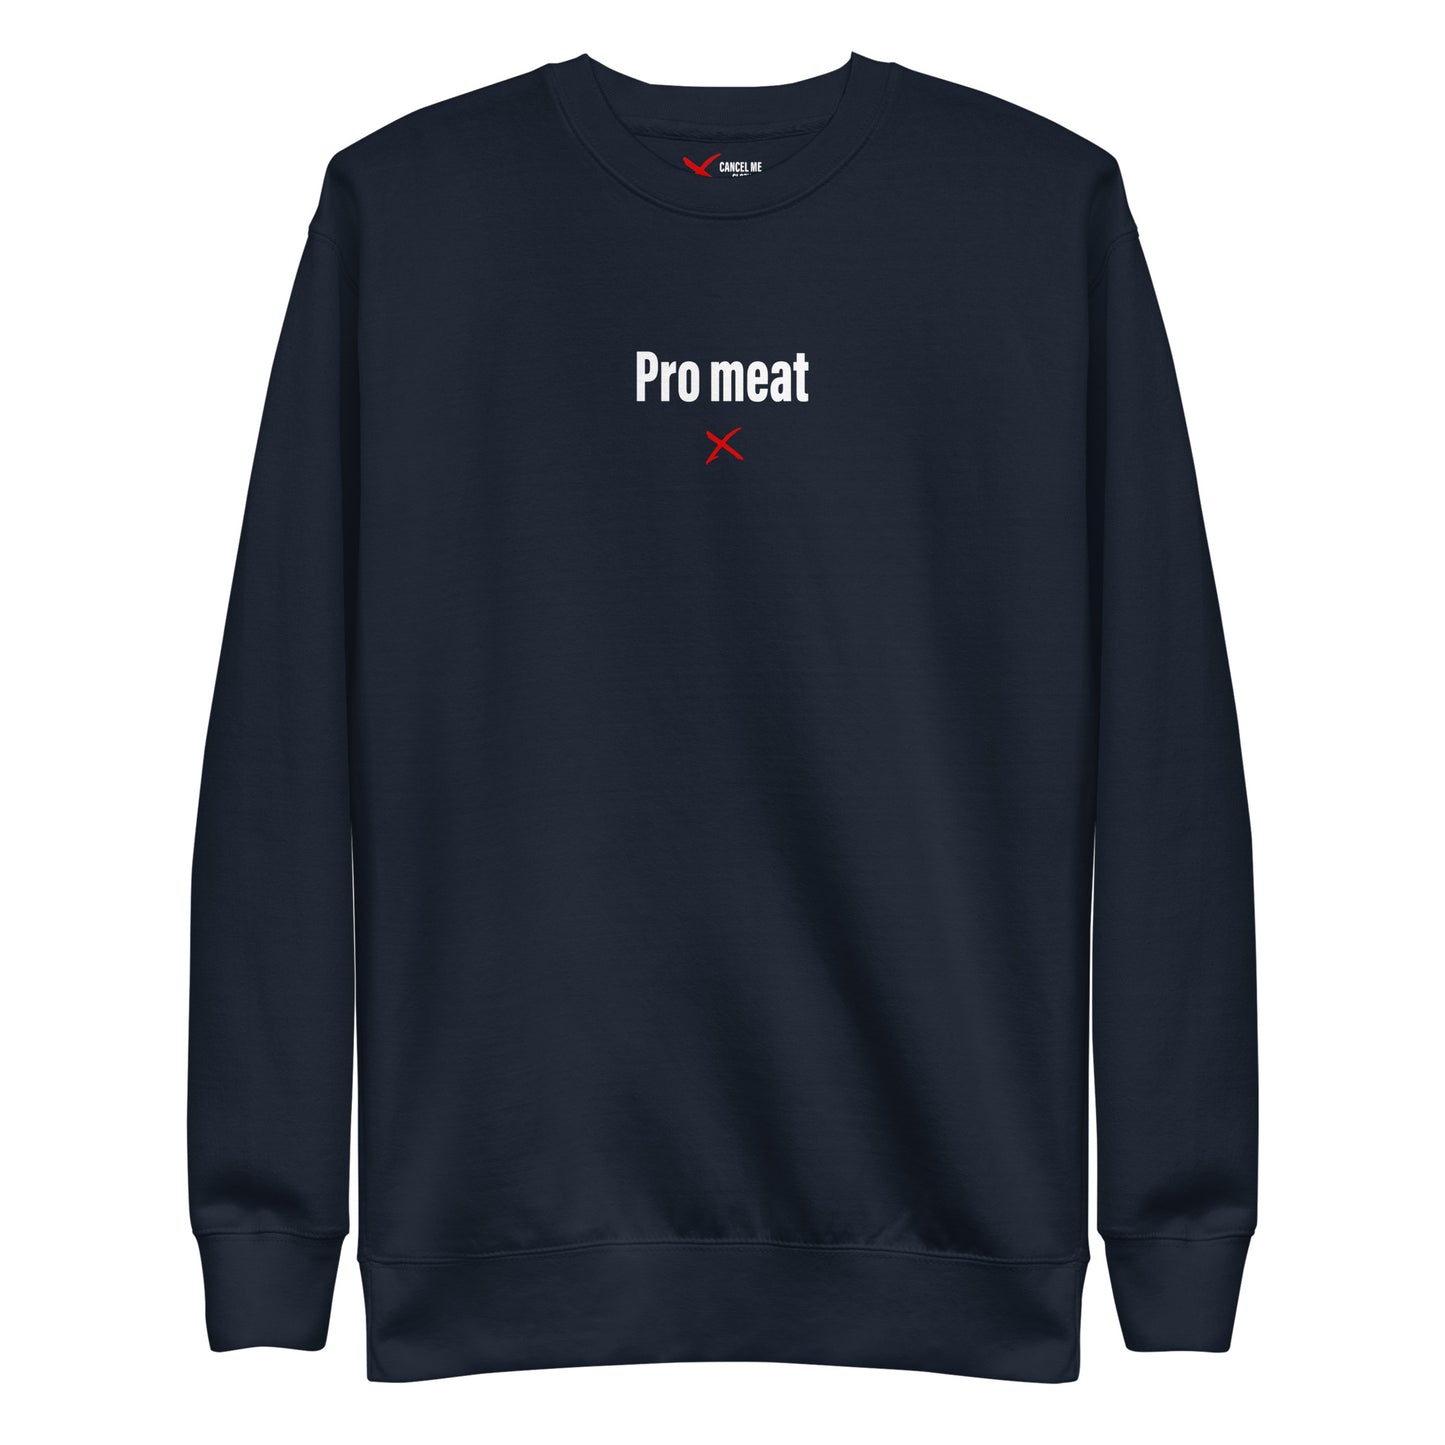 Pro meat - Sweatshirt